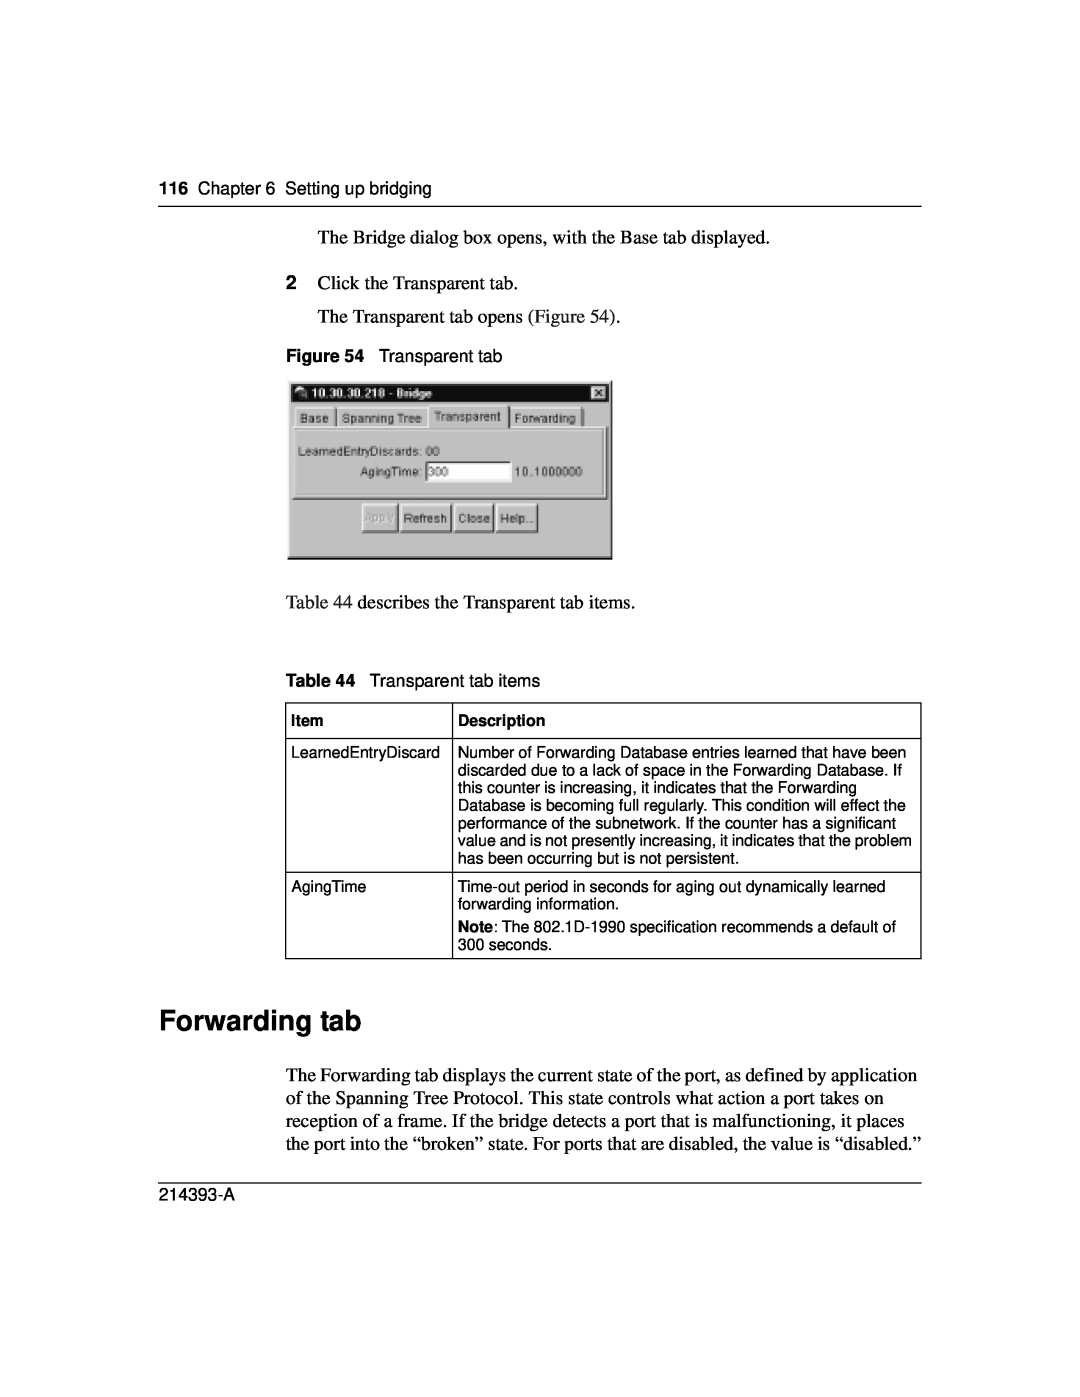 Nortel Networks 214393-A manual Forwarding tab 